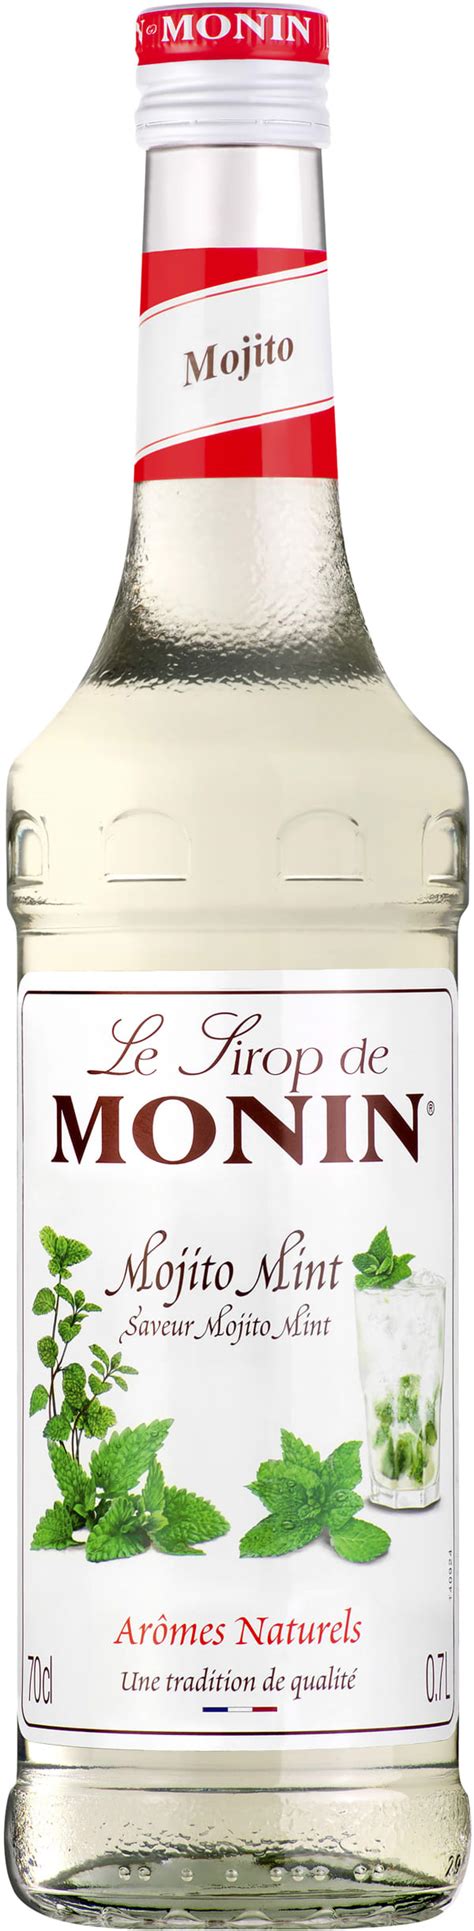 Le Sirop De Monin Mojito Mint Alko